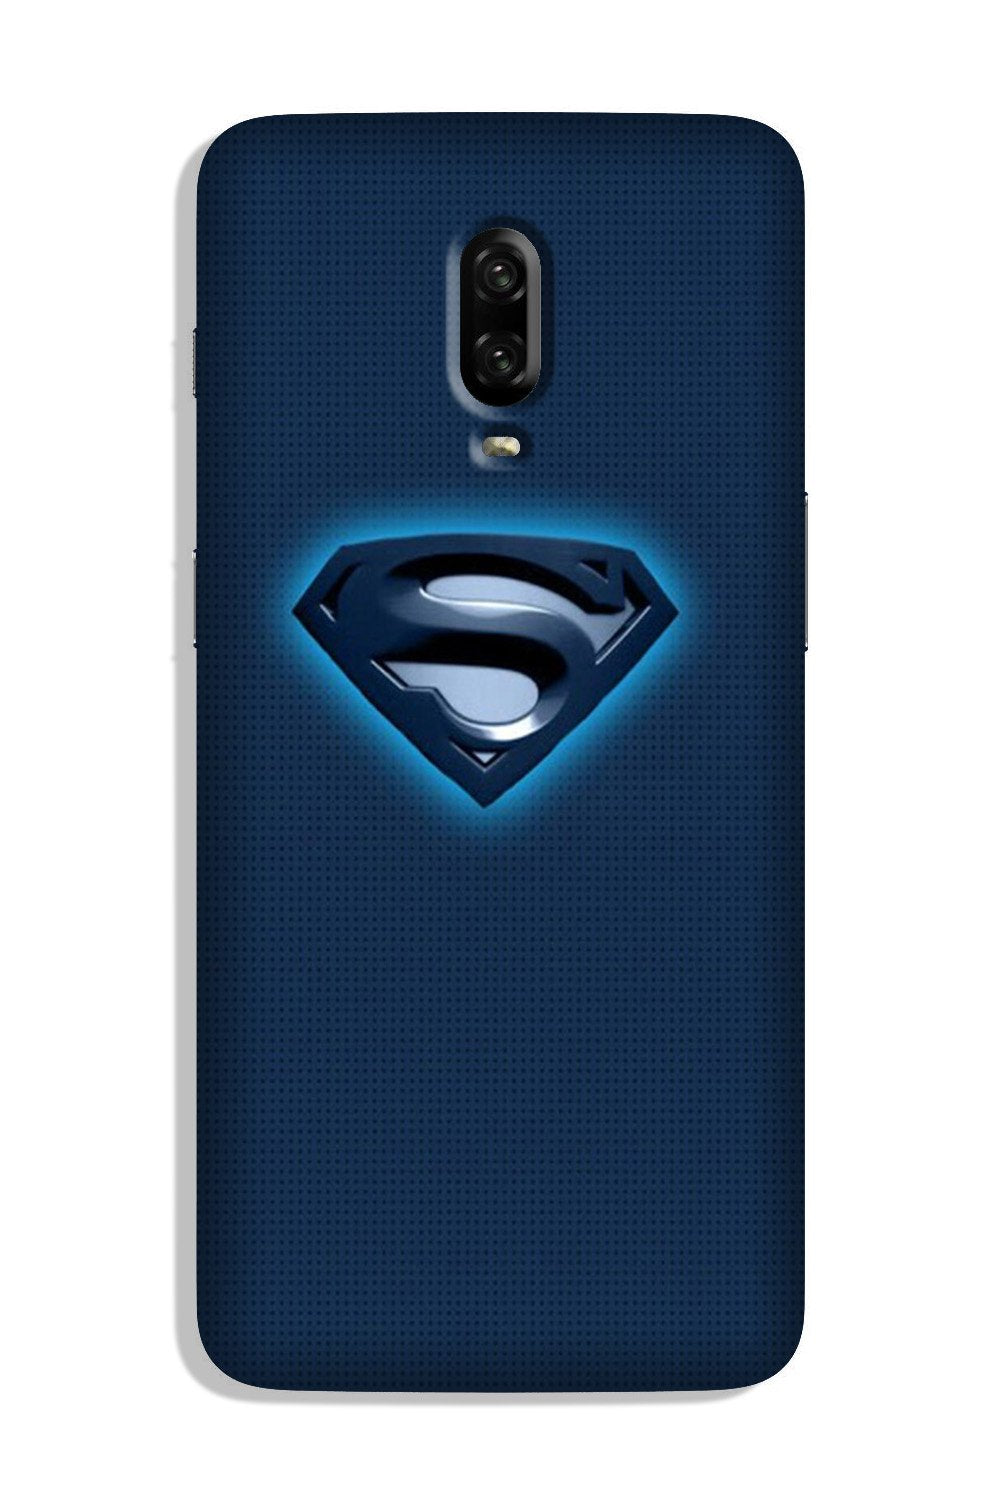 Superman Superhero Case for OnePlus 7  (Design - 117)